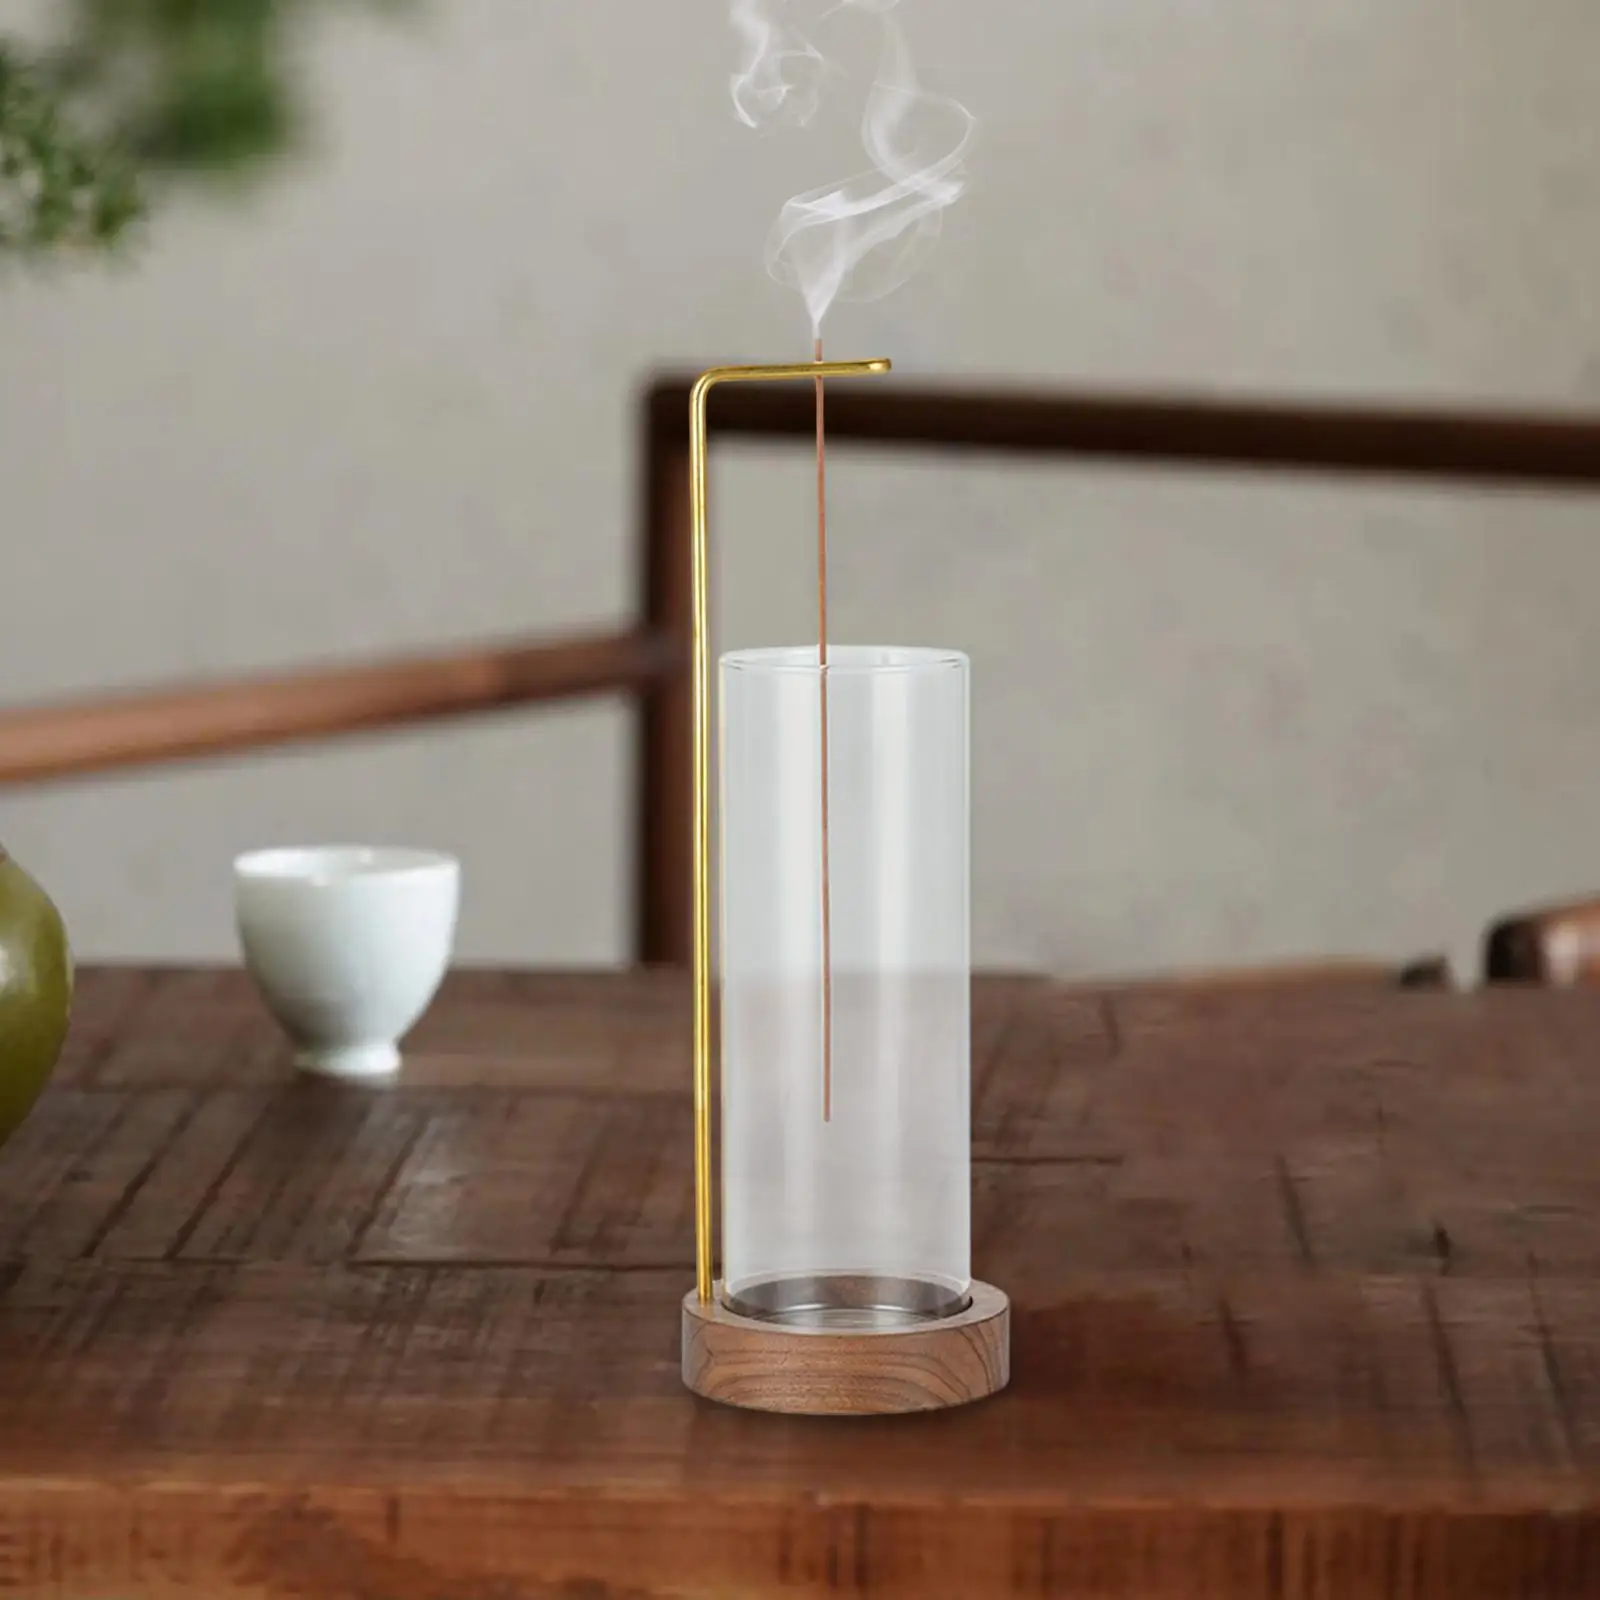 Incense Holder for Sticks Home Decor SPA Bedroom Tabletop Upside Down